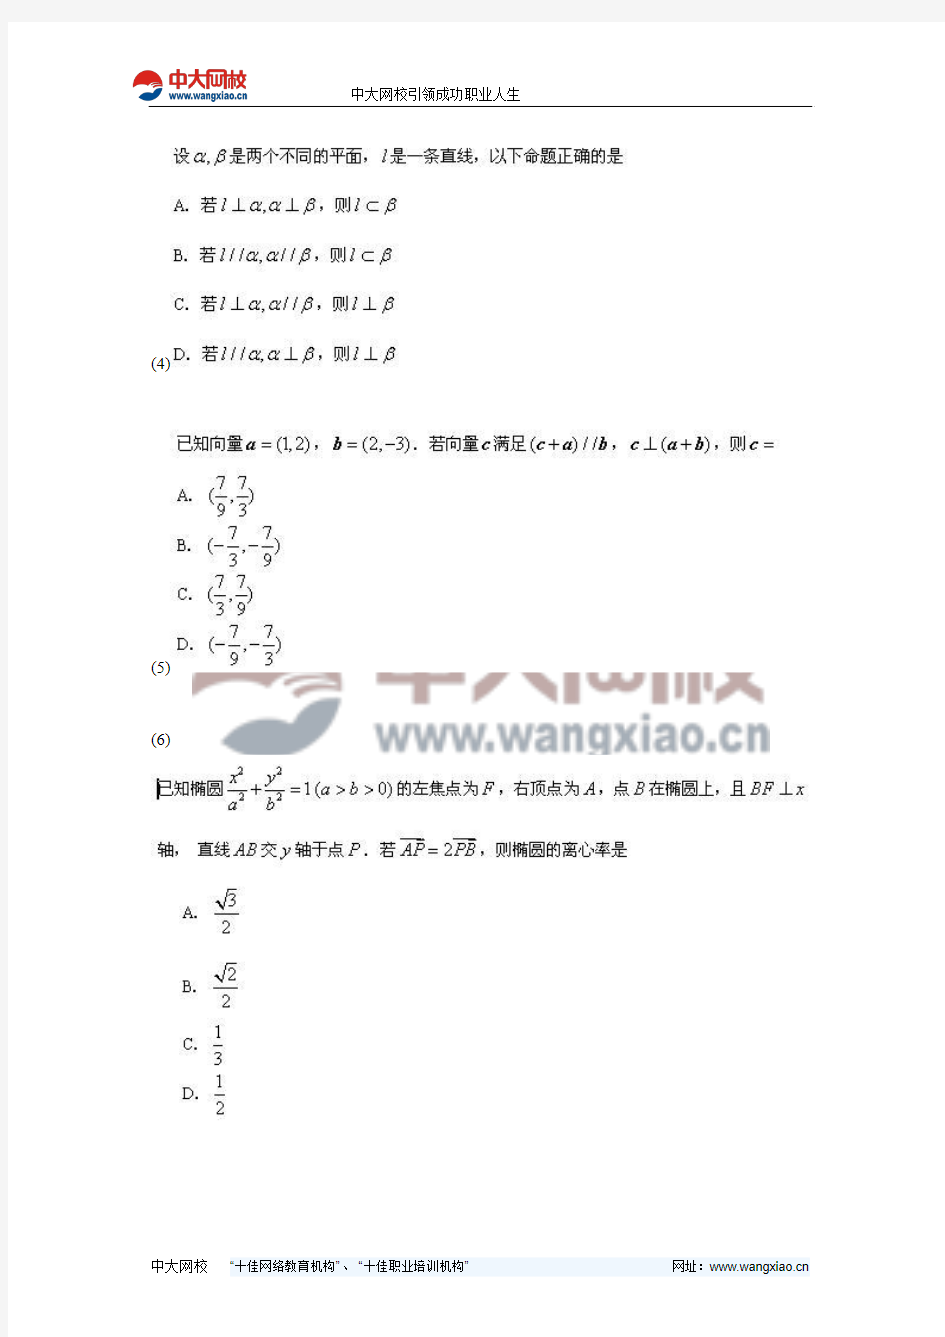 2009年高考浙江数学(文)试题及参考答案(估分)-中大网校